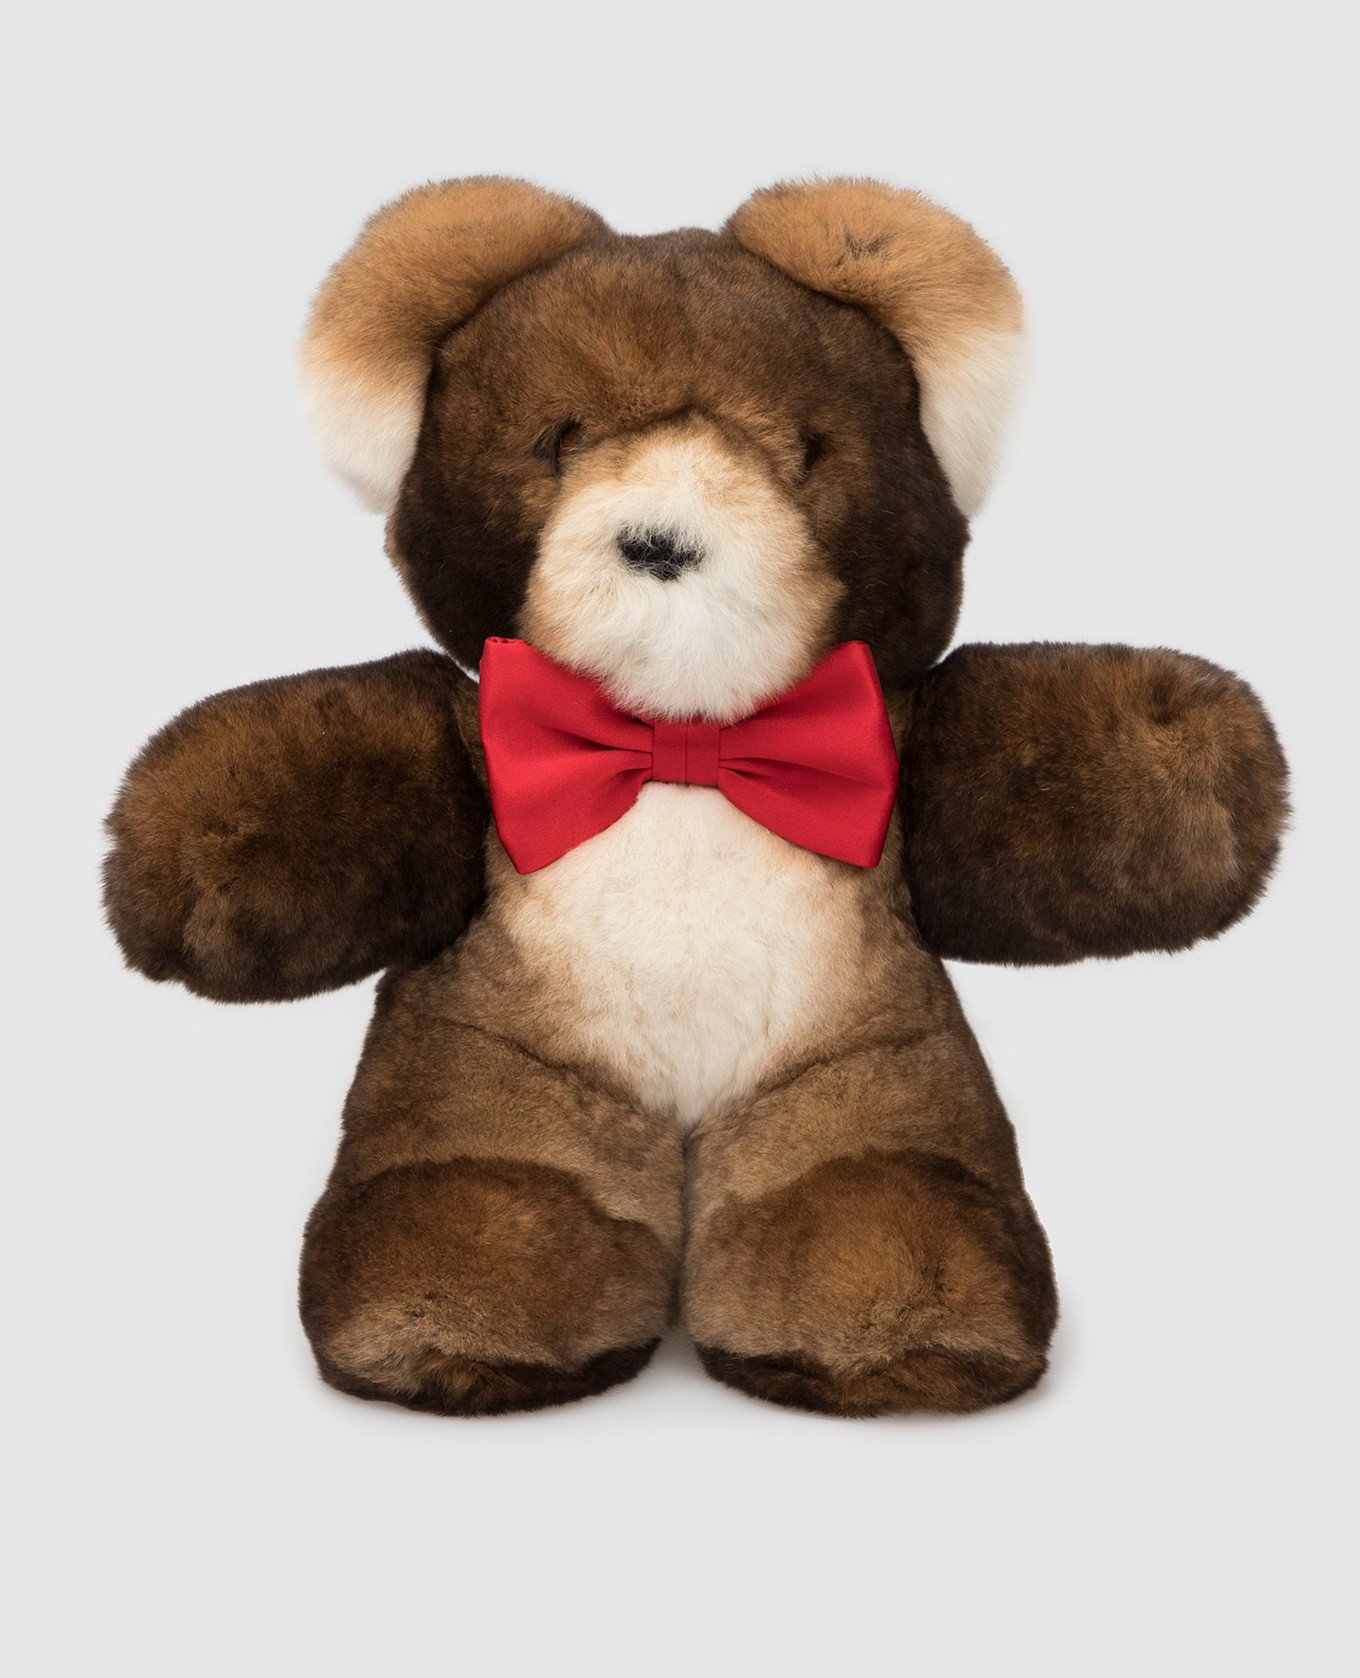 

Детская коричневая игрушка Teddy Bear из меха кролика, Коричневый, Игрушки